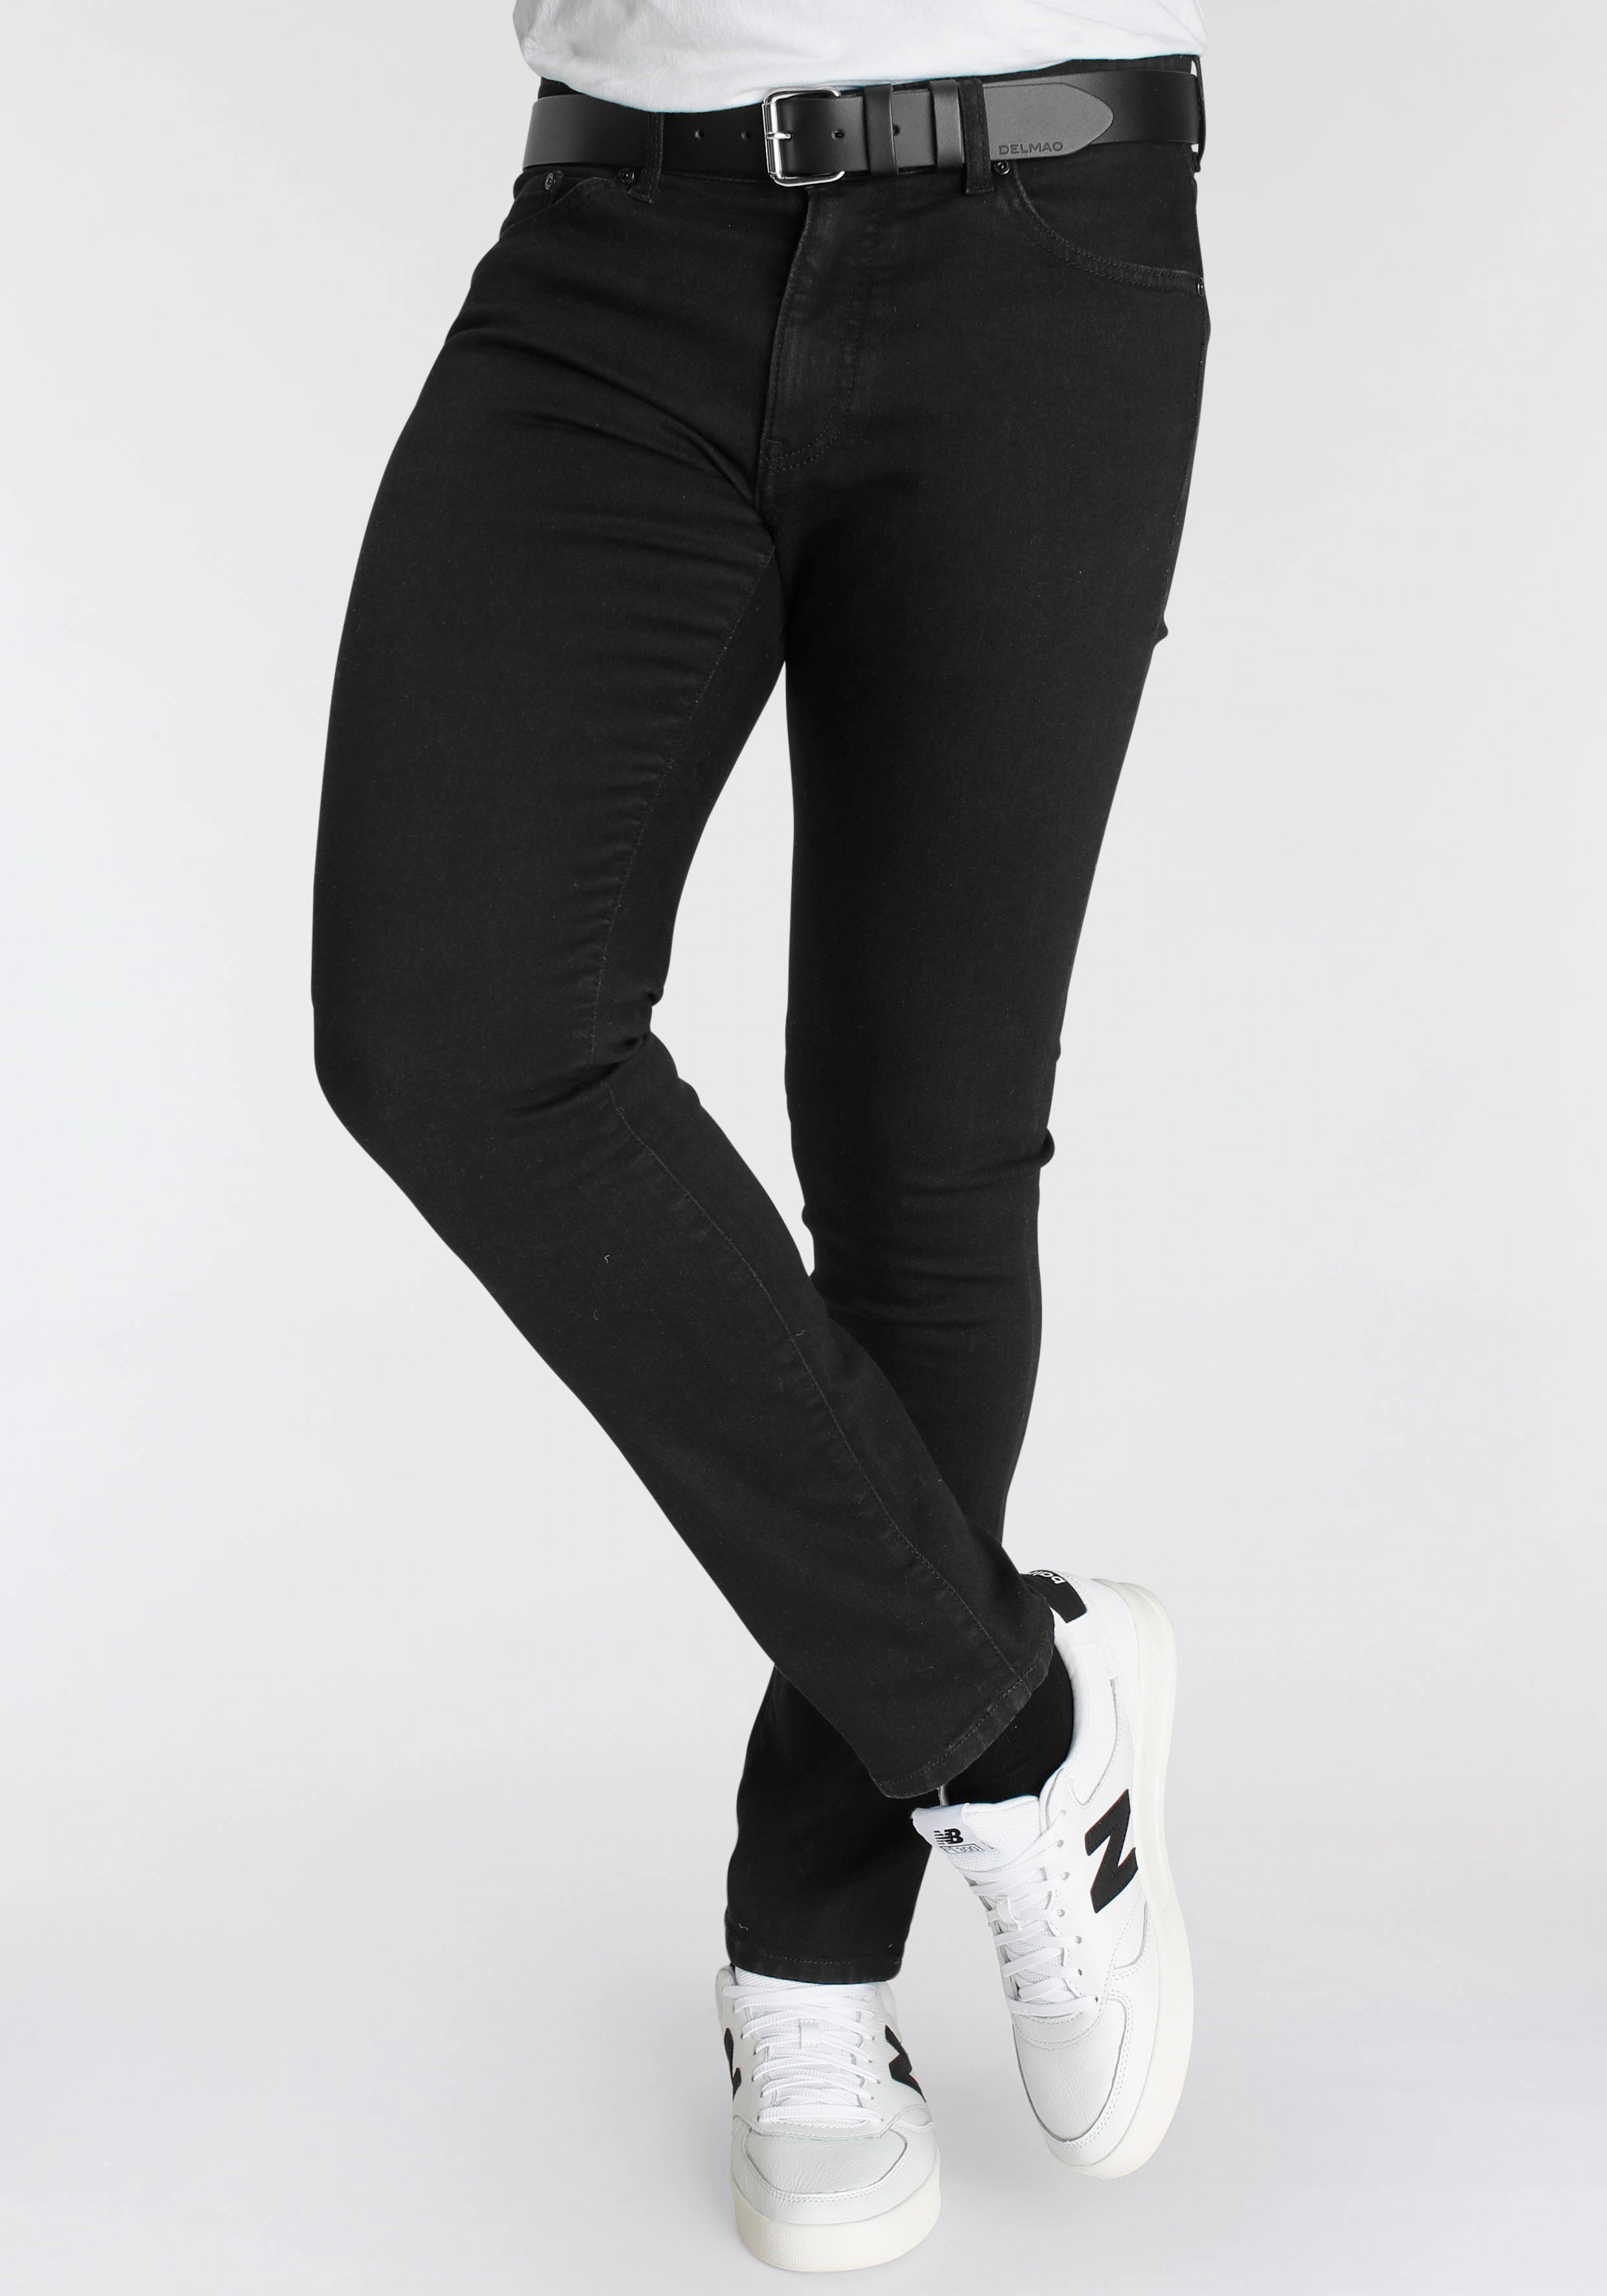 DELMAO Stretch-Jeans "Reed" mit schöner Innenverarbeitung - NEUE MARKE! günstig online kaufen